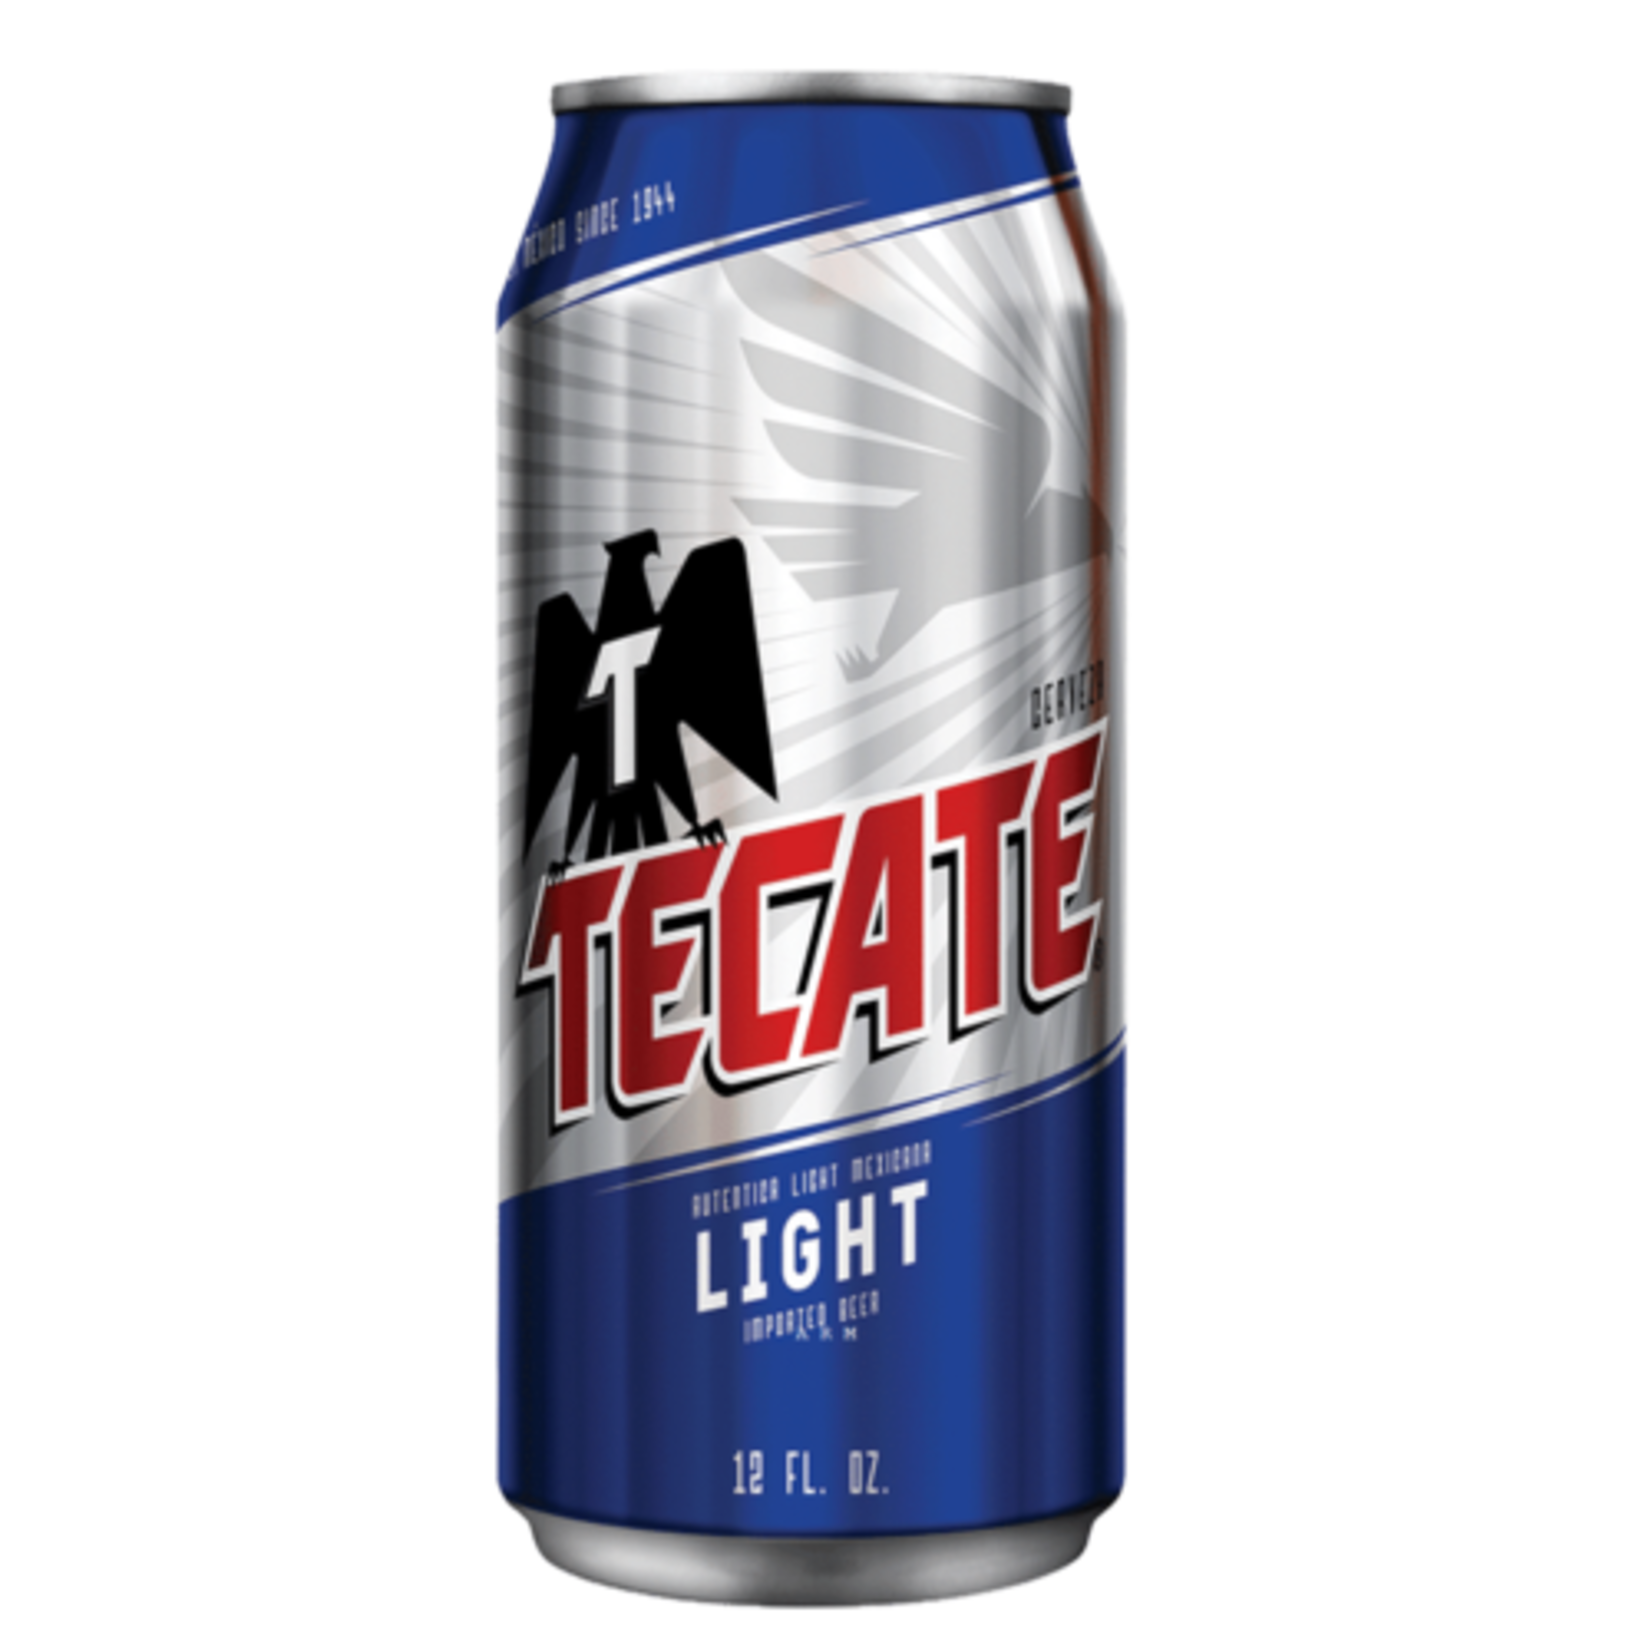 Tecate Light - Fenwick Liquor